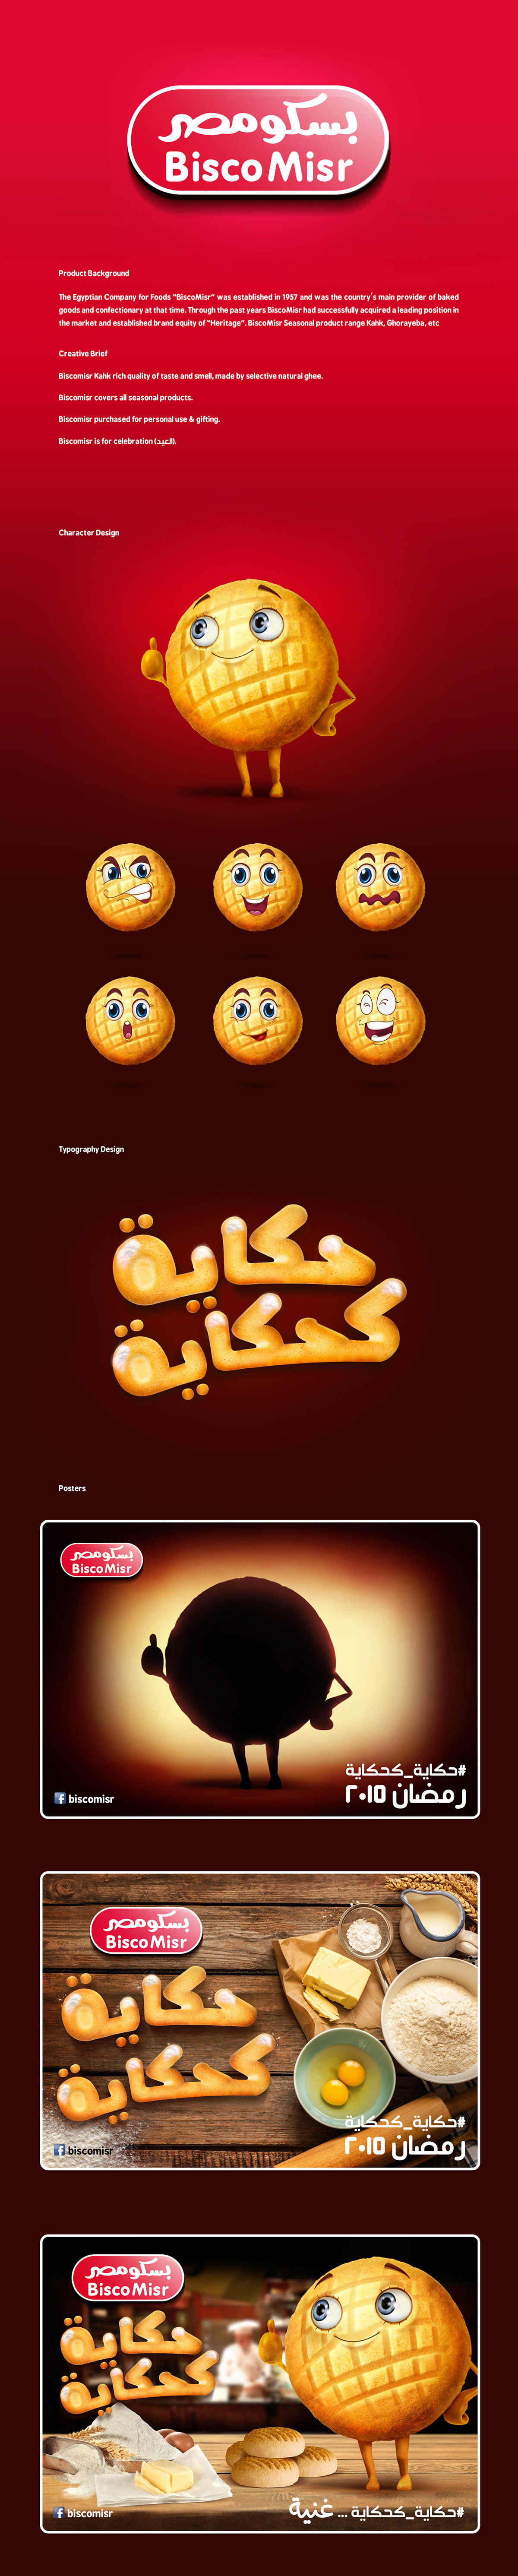 biscomisr biscuit ramadan Eid feast Character design poster Outdoor posm Campgain